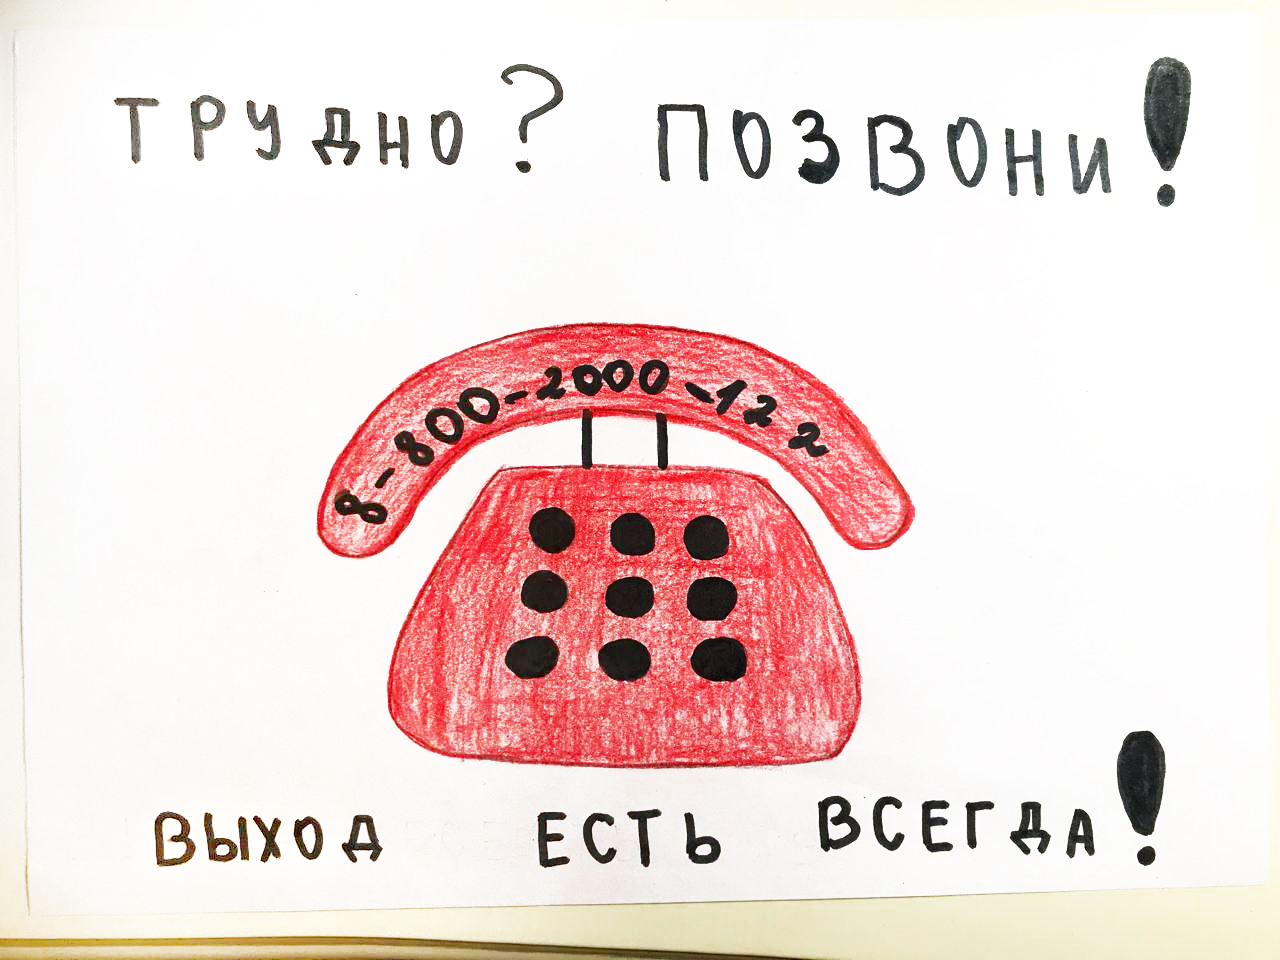 Рисунок на тему телефон доверия для детей